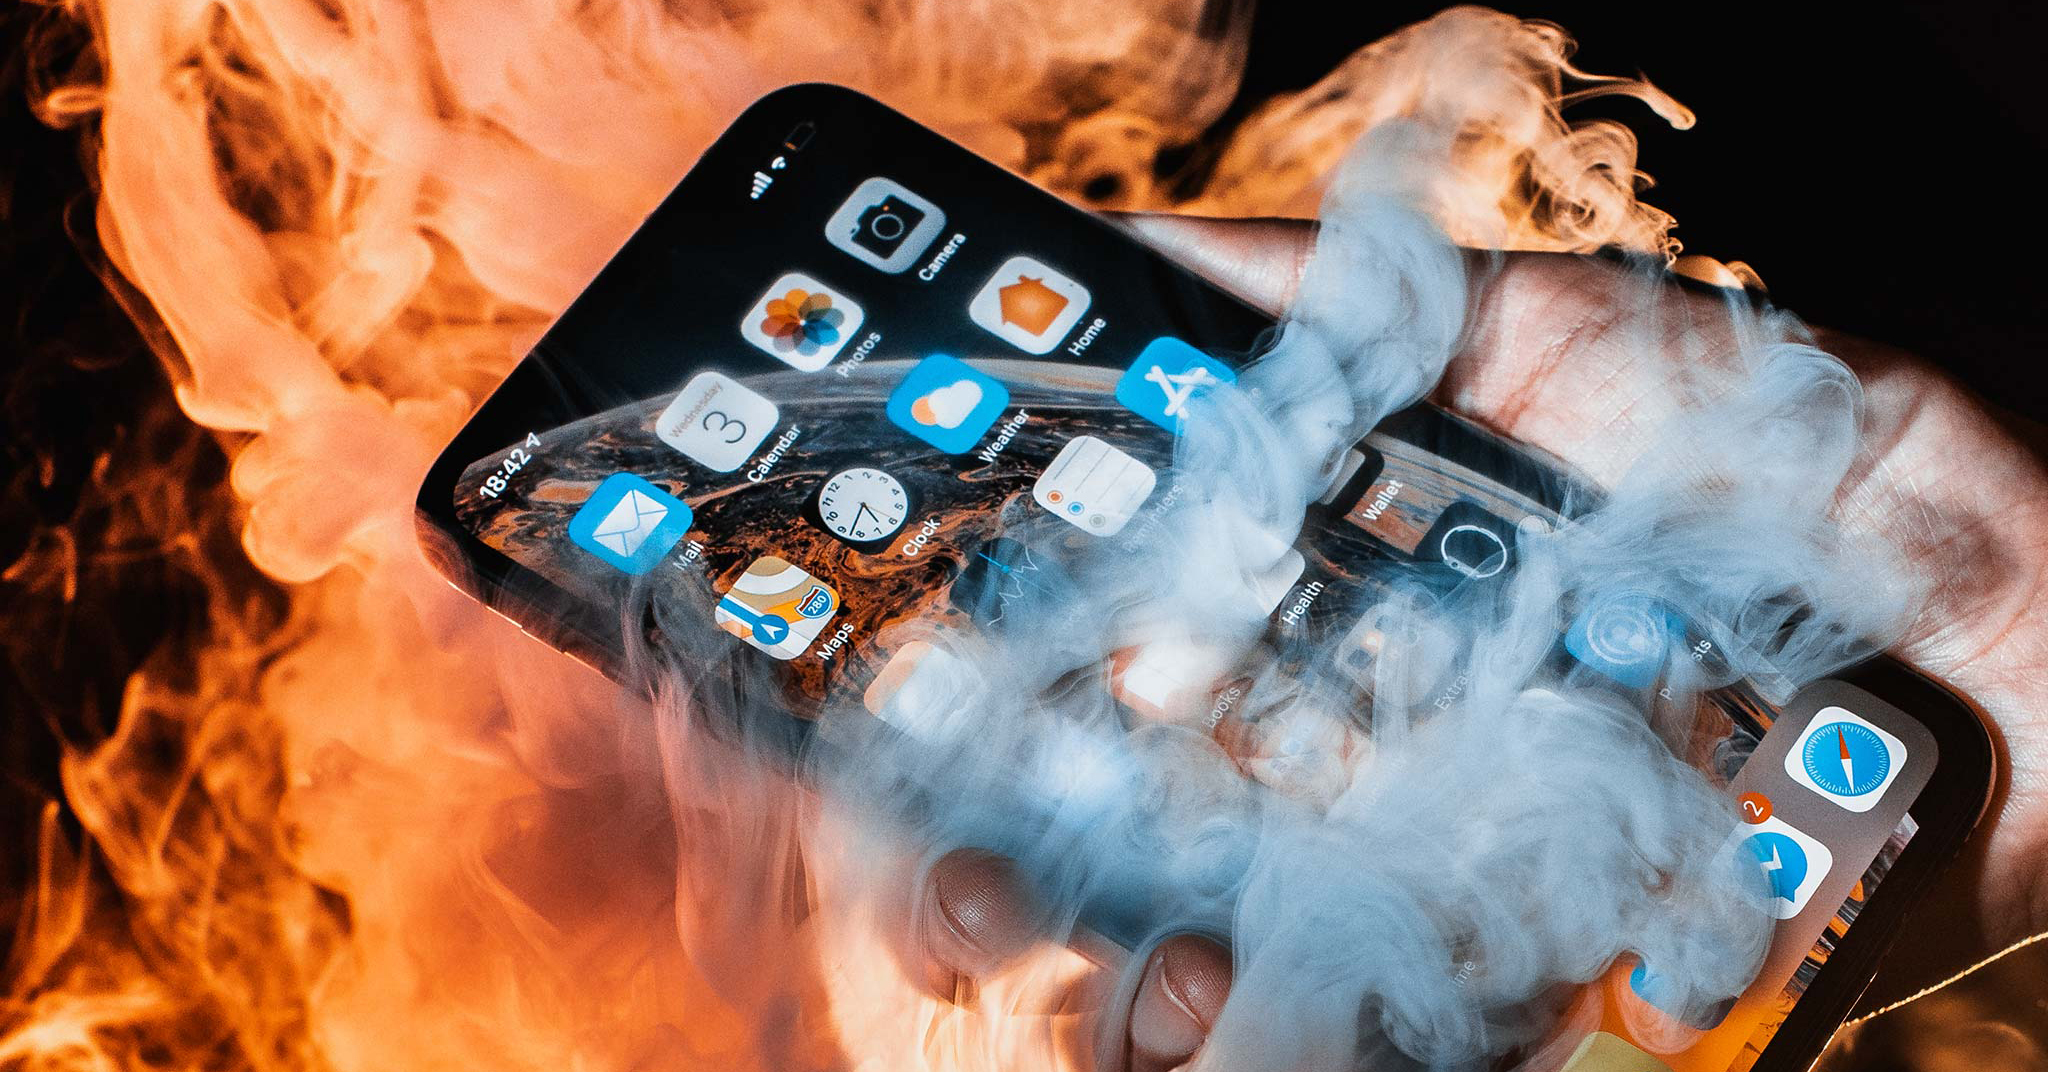 5 mẹo kiểm tra iPhone cũ được dân chuyên chia sẻ để tránh nhận cú lừa